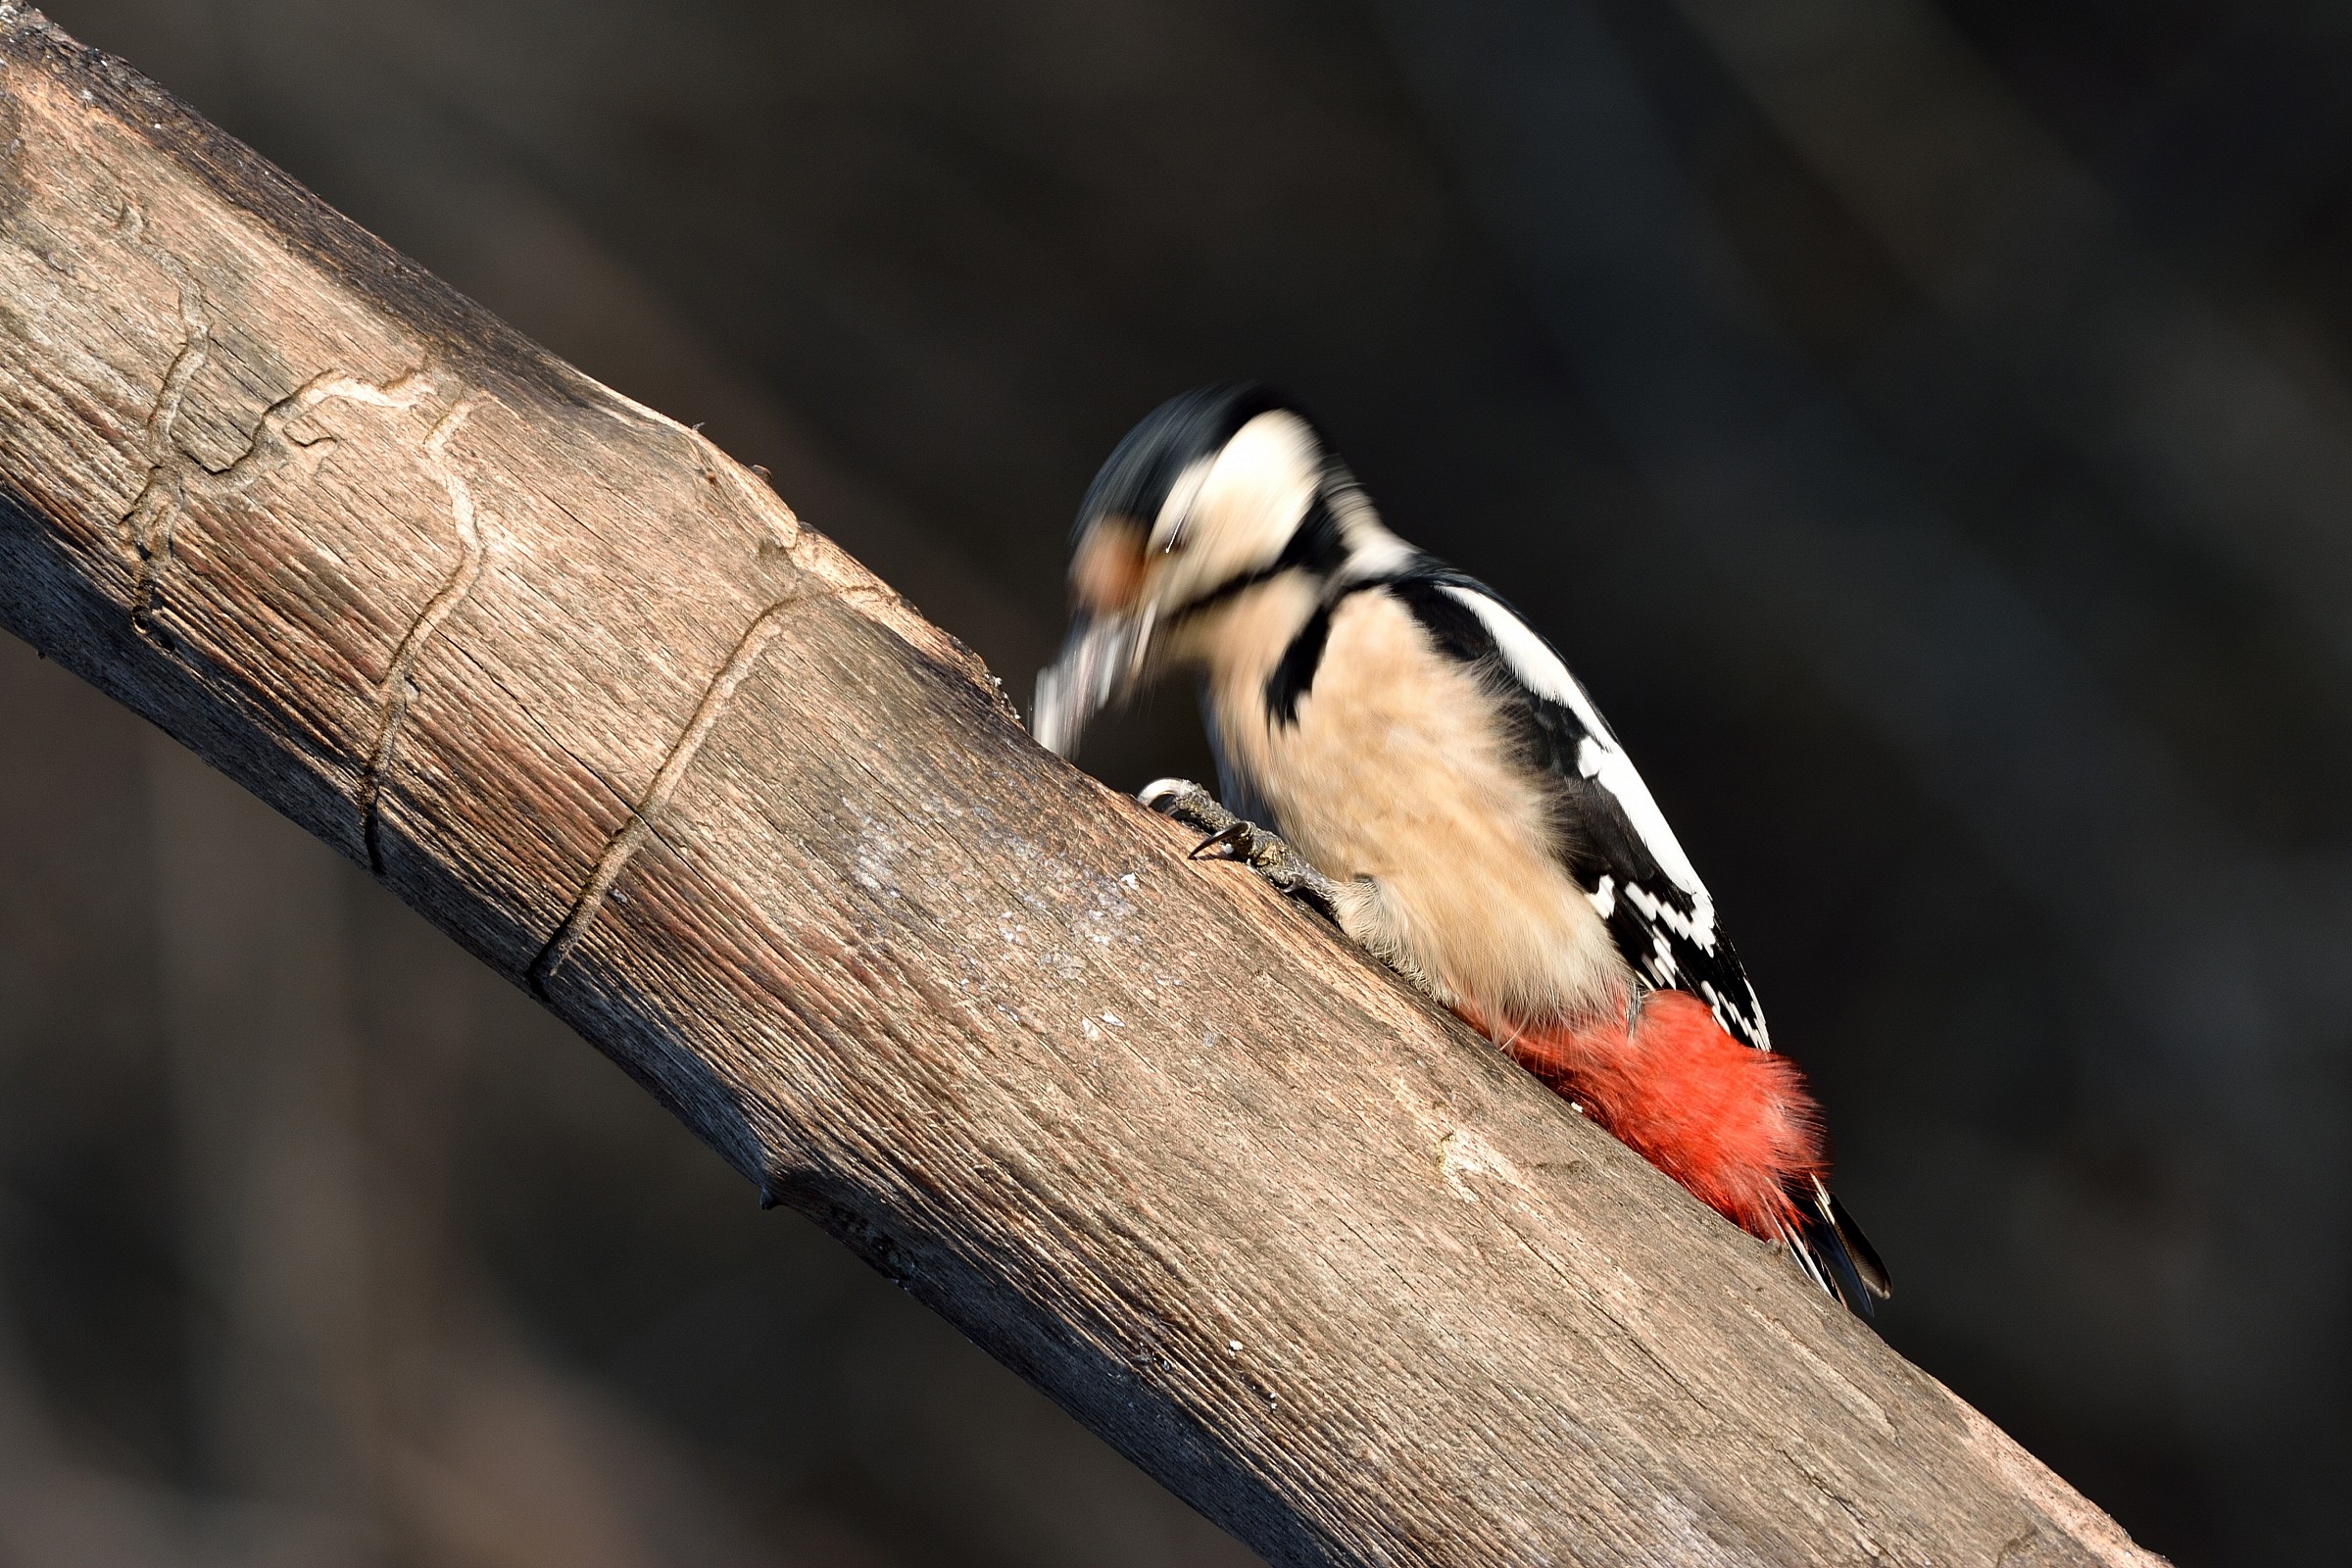 Woodpecker at work...